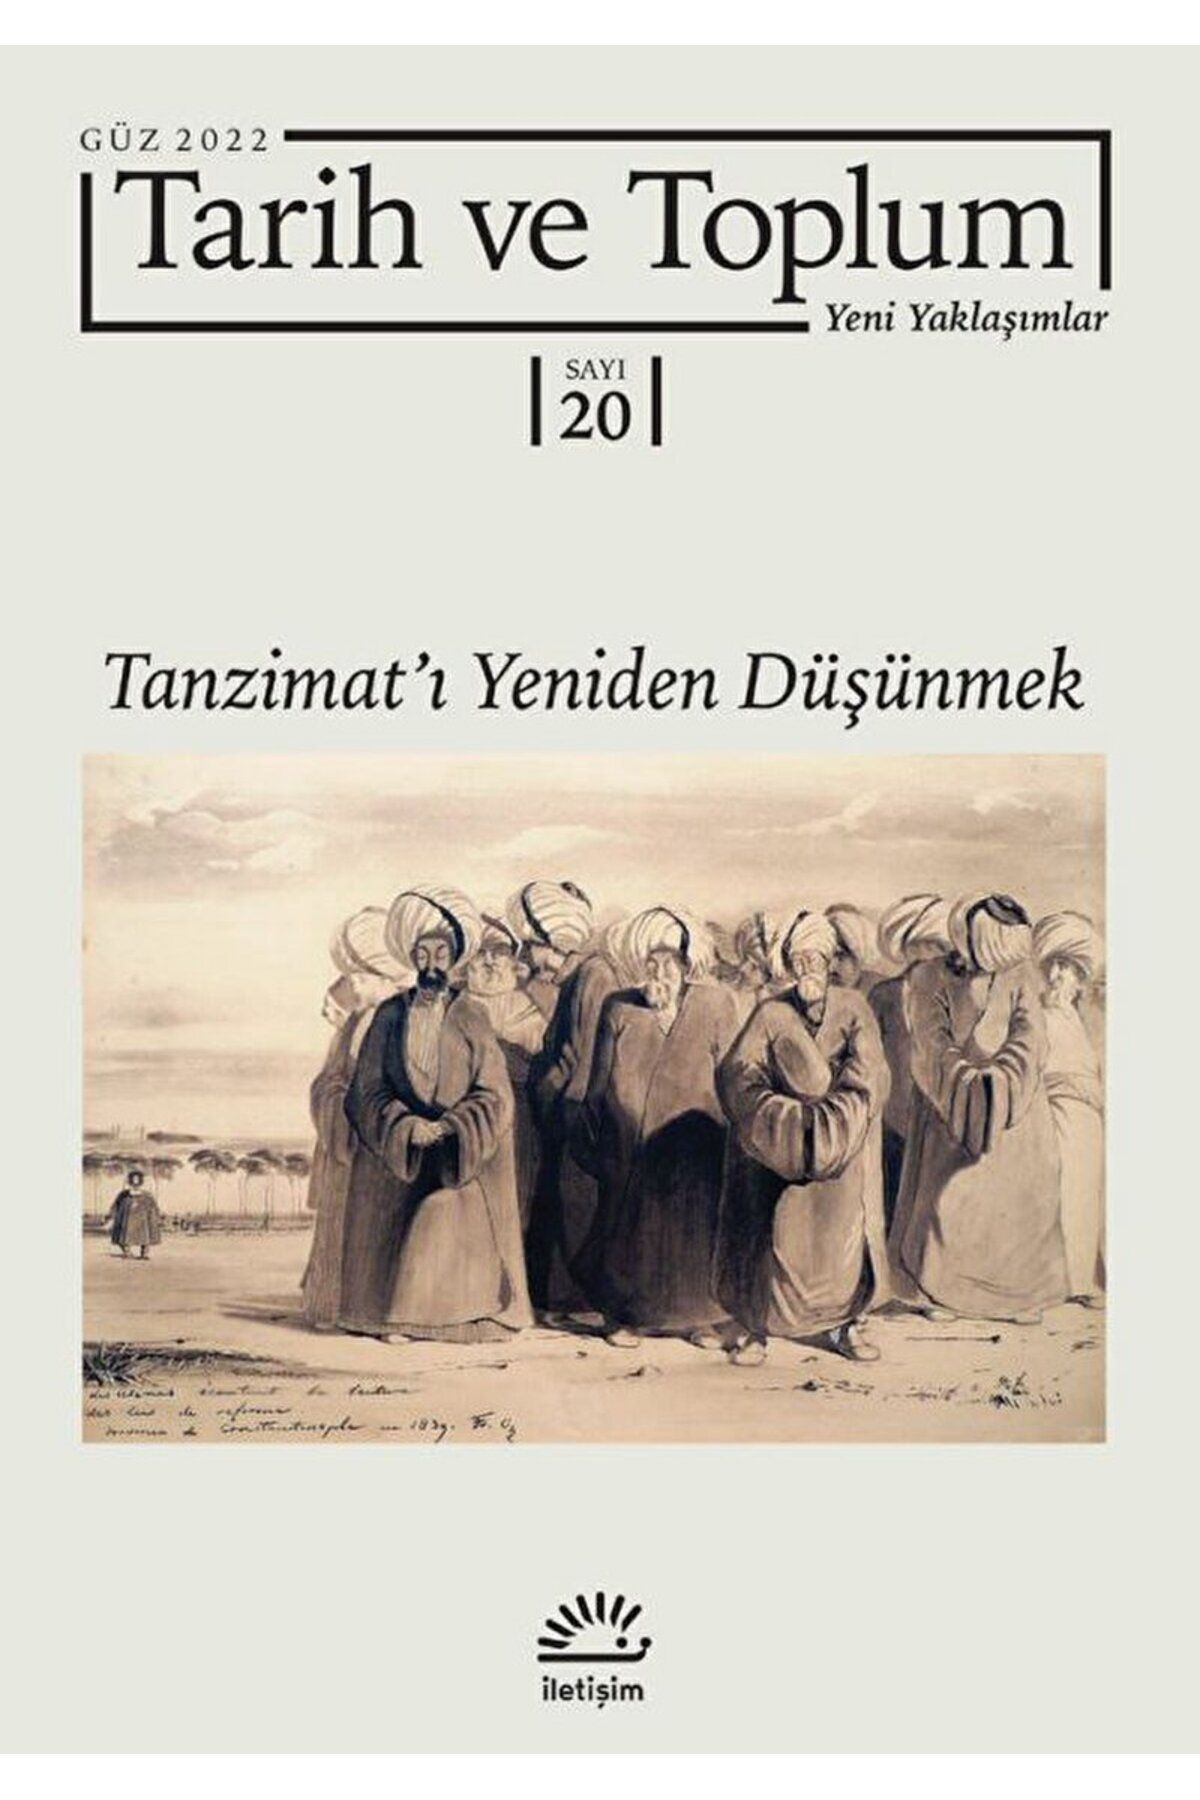 İletişim Yayınları Tarih ve Toplum Yeni Yaklaşımlar Sayı: 20 - Güz 2022 / Kolektif / İletişim Yayınevi / 9771019462420